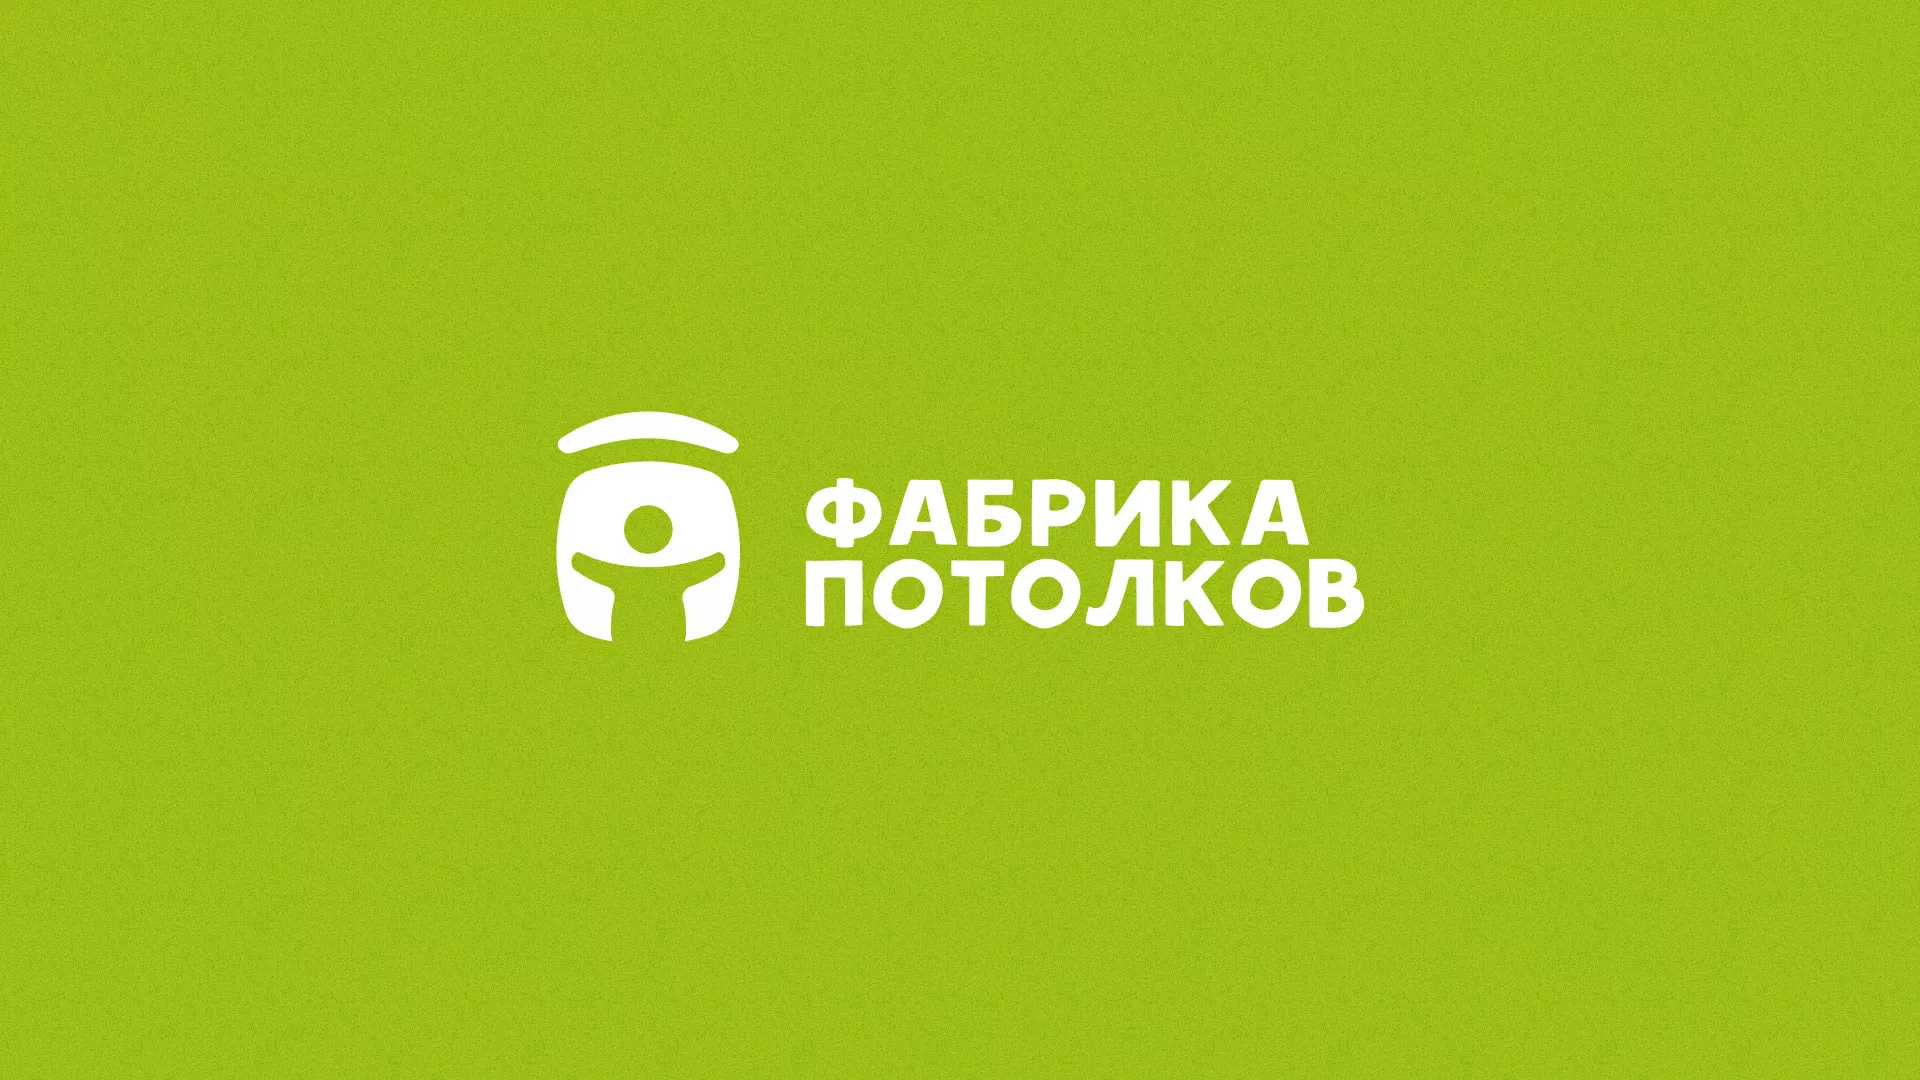 Разработка логотипа для производства натяжных потолков в Котельниково